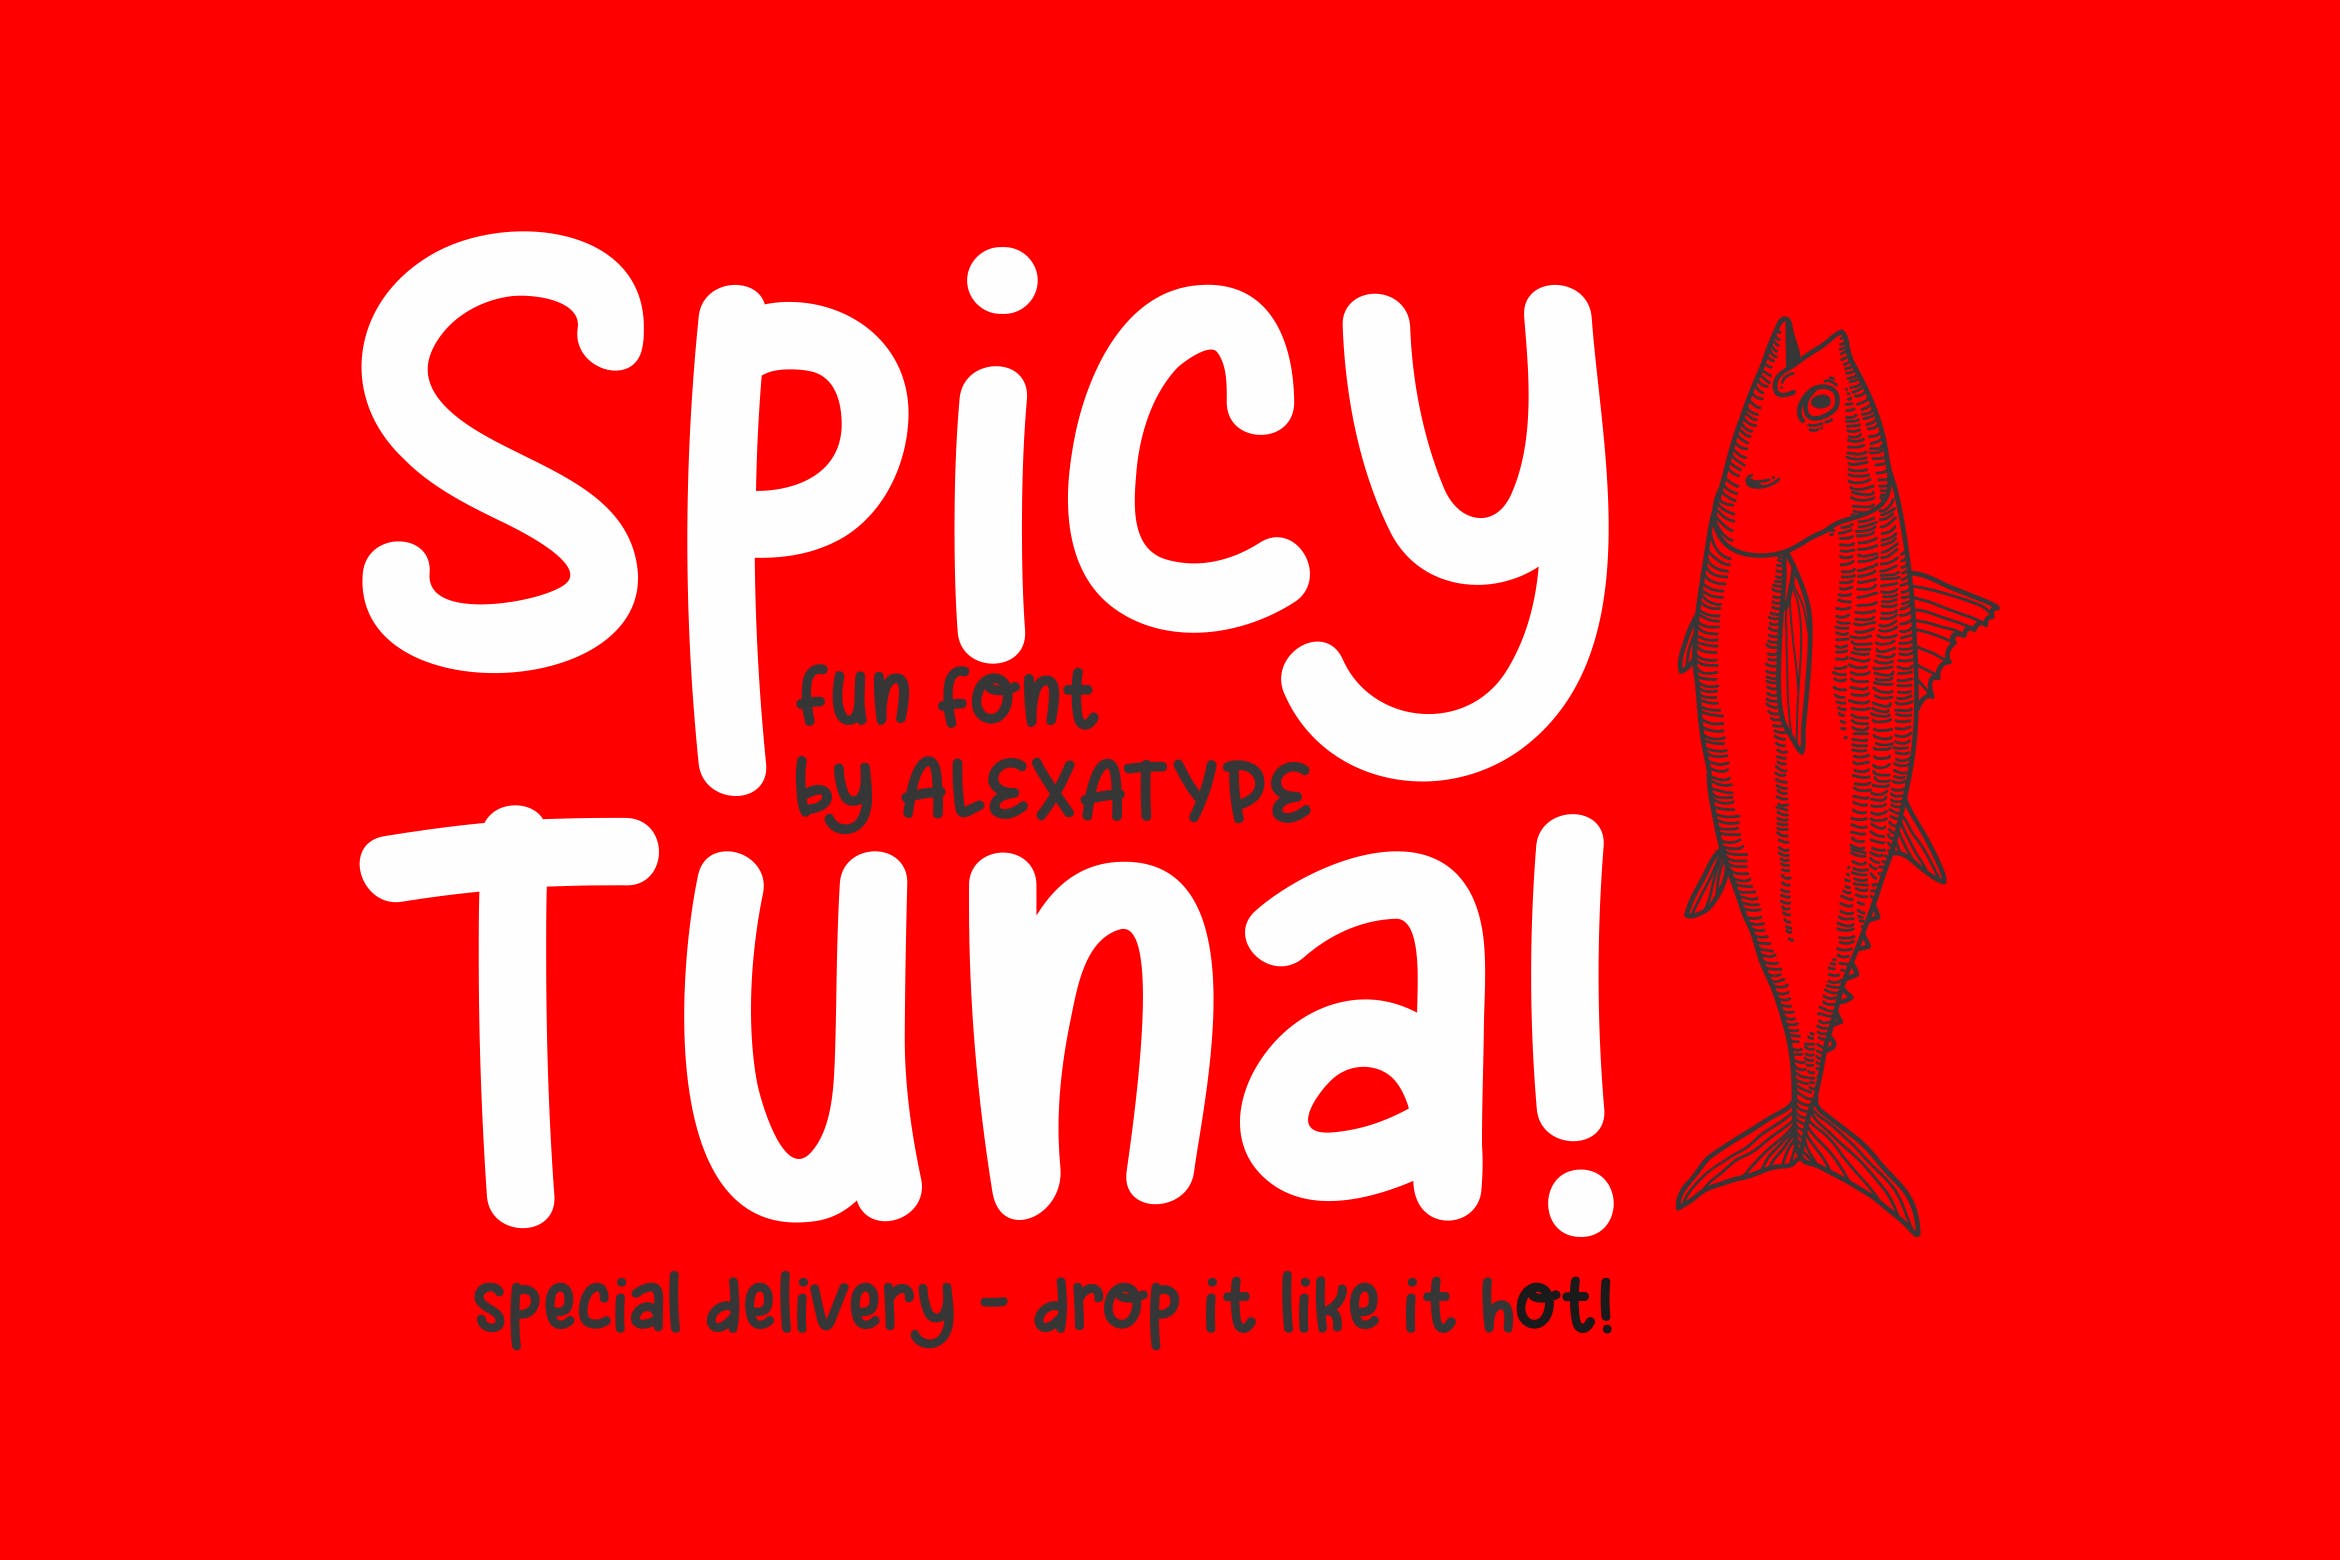 可爱风格英文儿童字体蚂蚁素材精选下载 Spicy Tuna – Fun Children Font插图